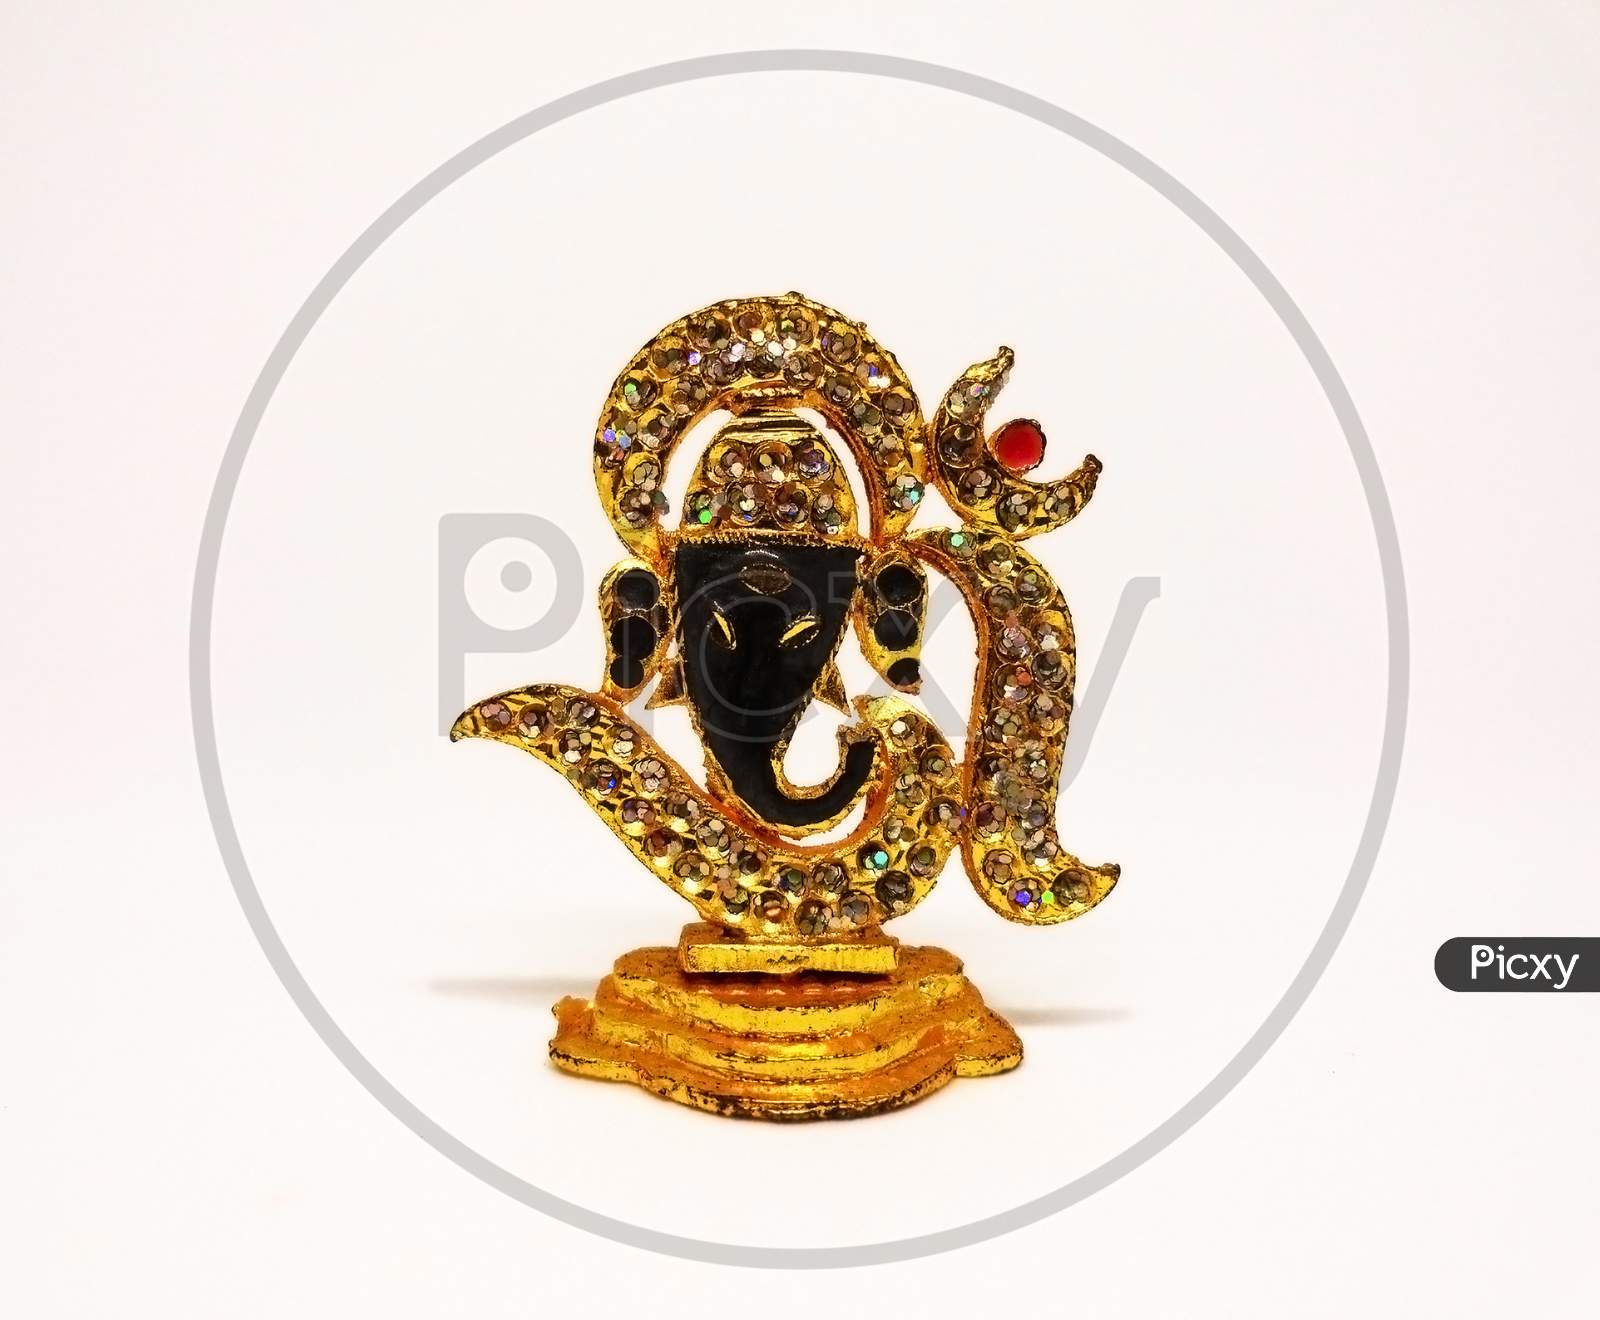 Replica of Hindu god lord Ganesha on white background